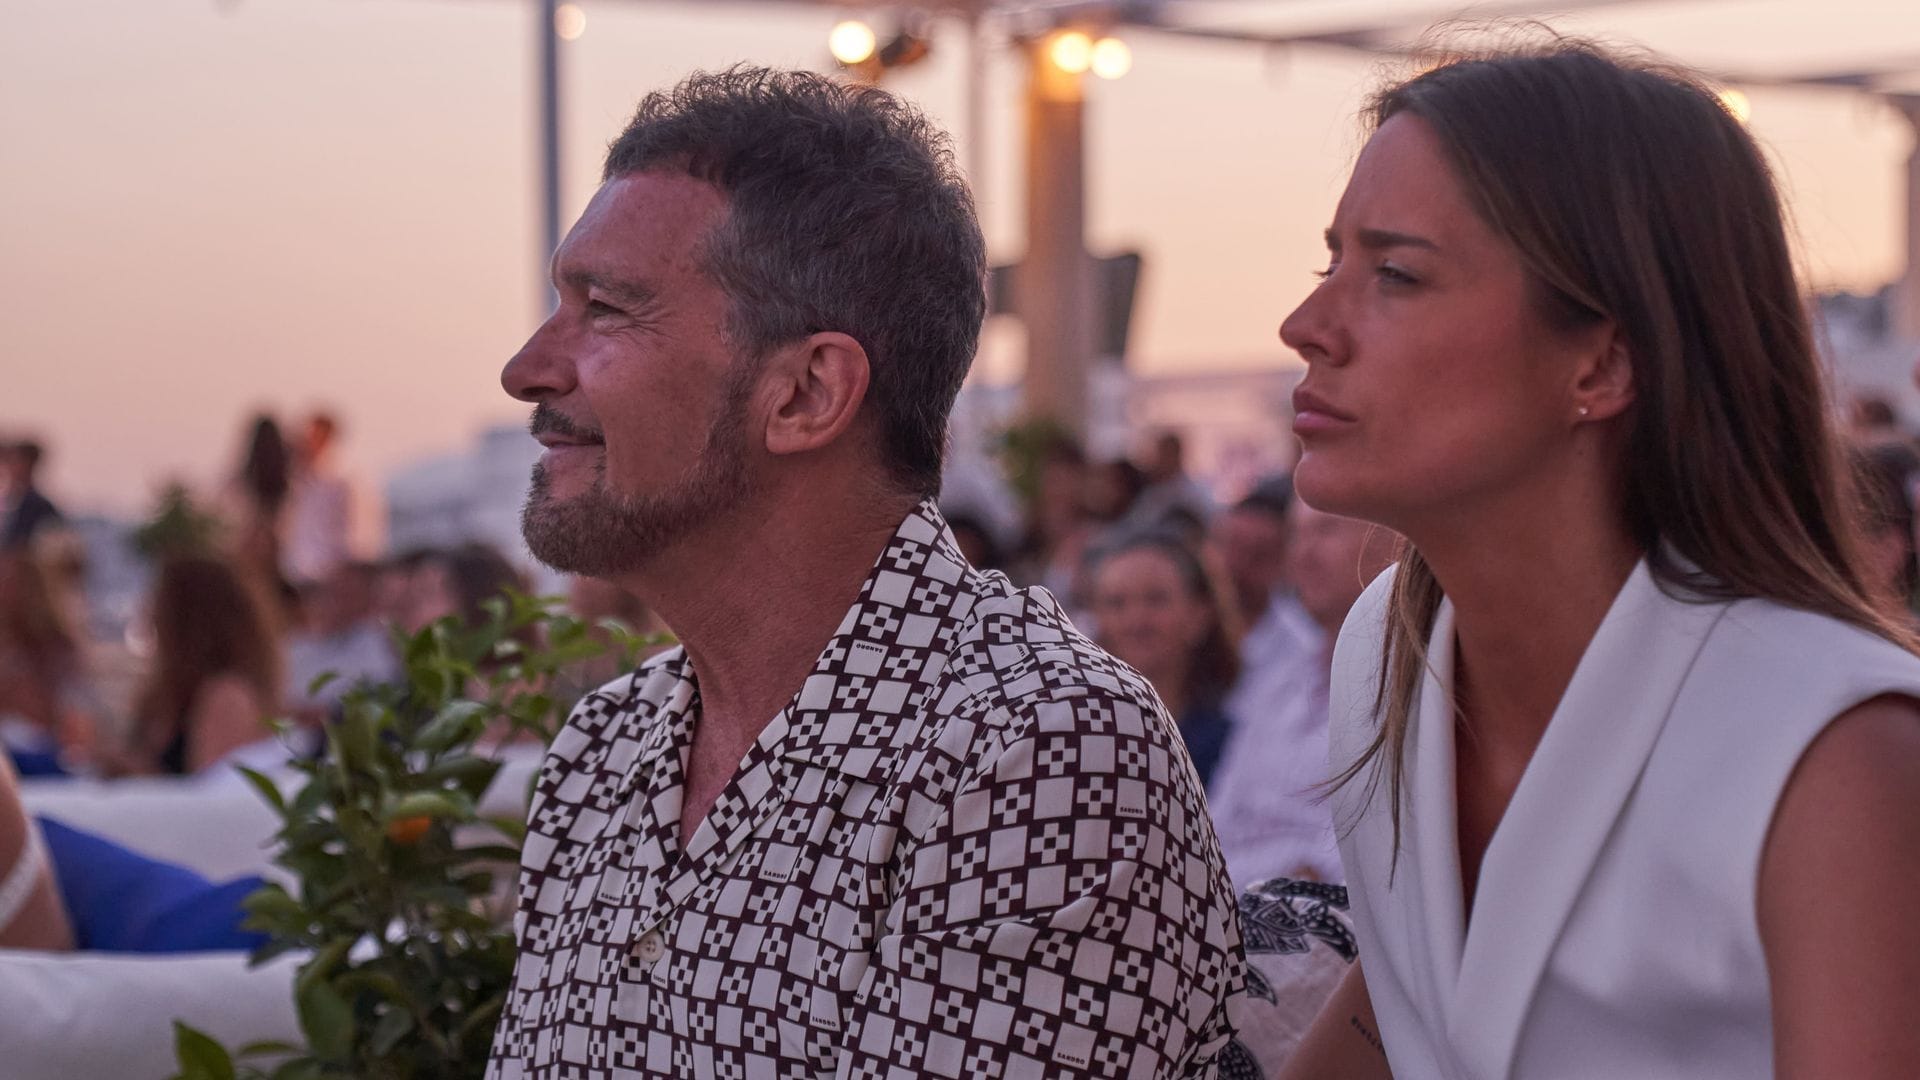 Antonio Banderas, Kirá Miró y Cayetana Guillén Cuervo disfrutan de la música de Café Quijano con vistas al mar Mediterráneo